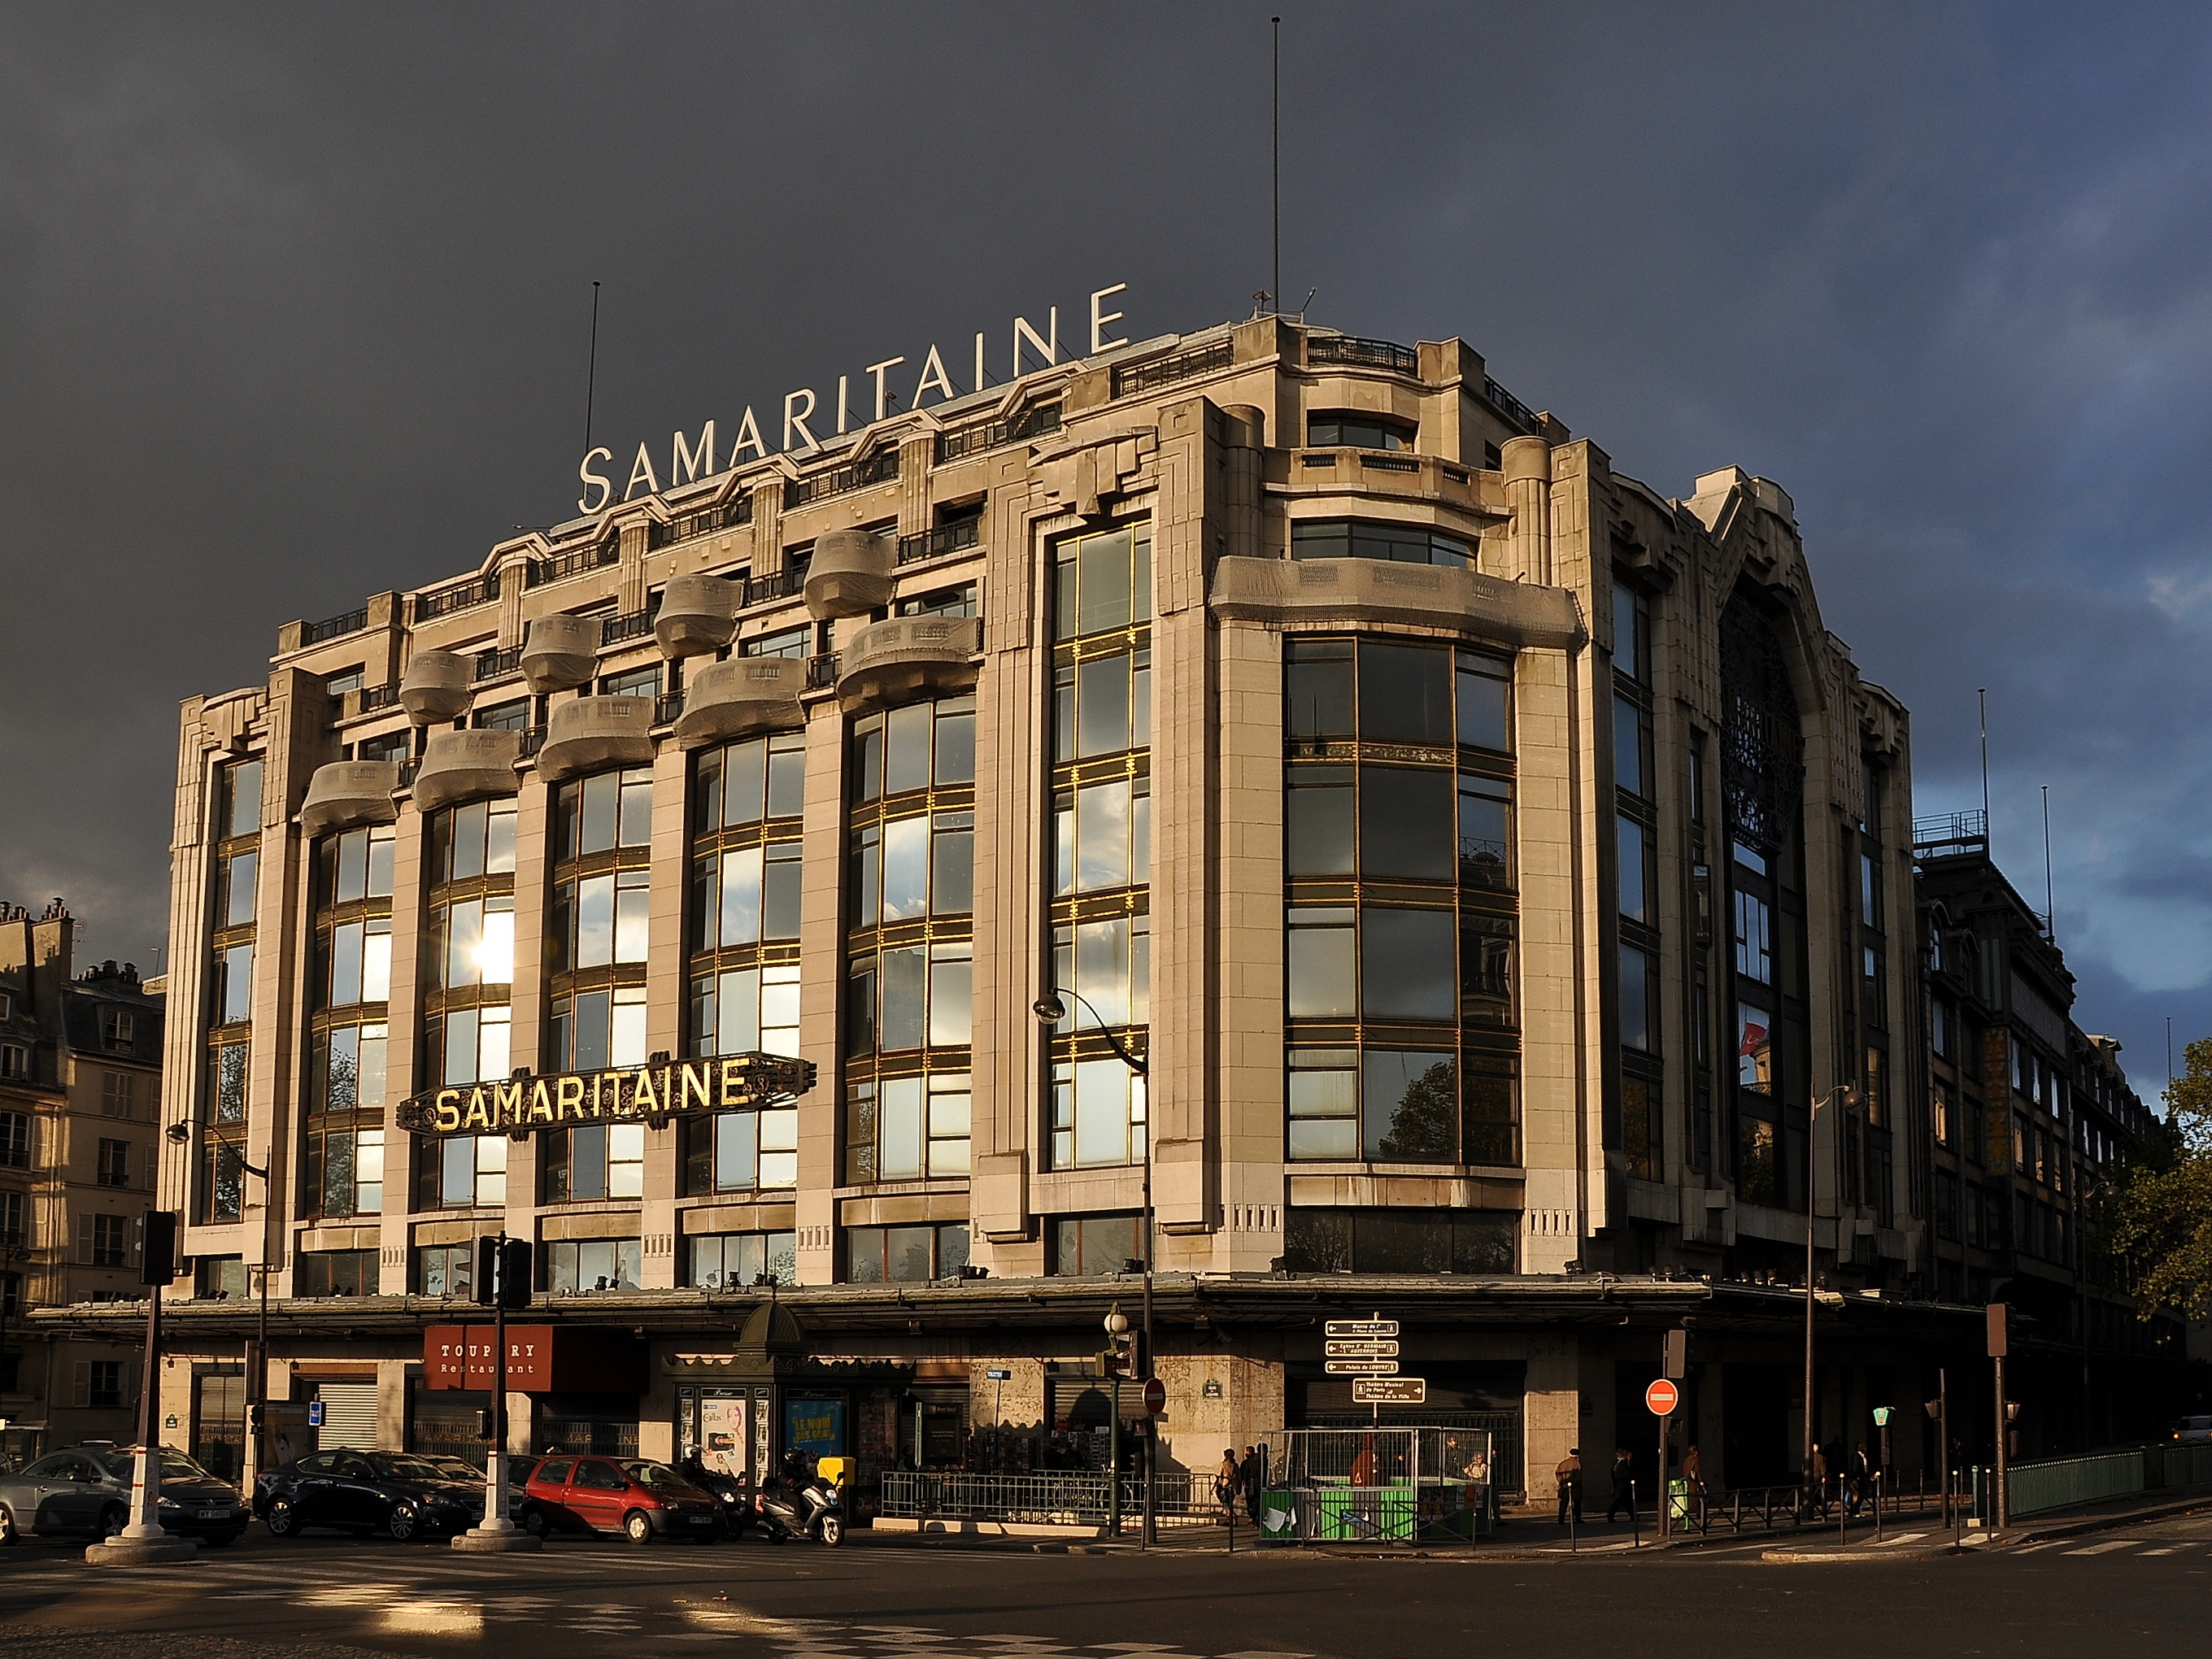 La Samaritaine: The Classic Paris Department Store Returns in